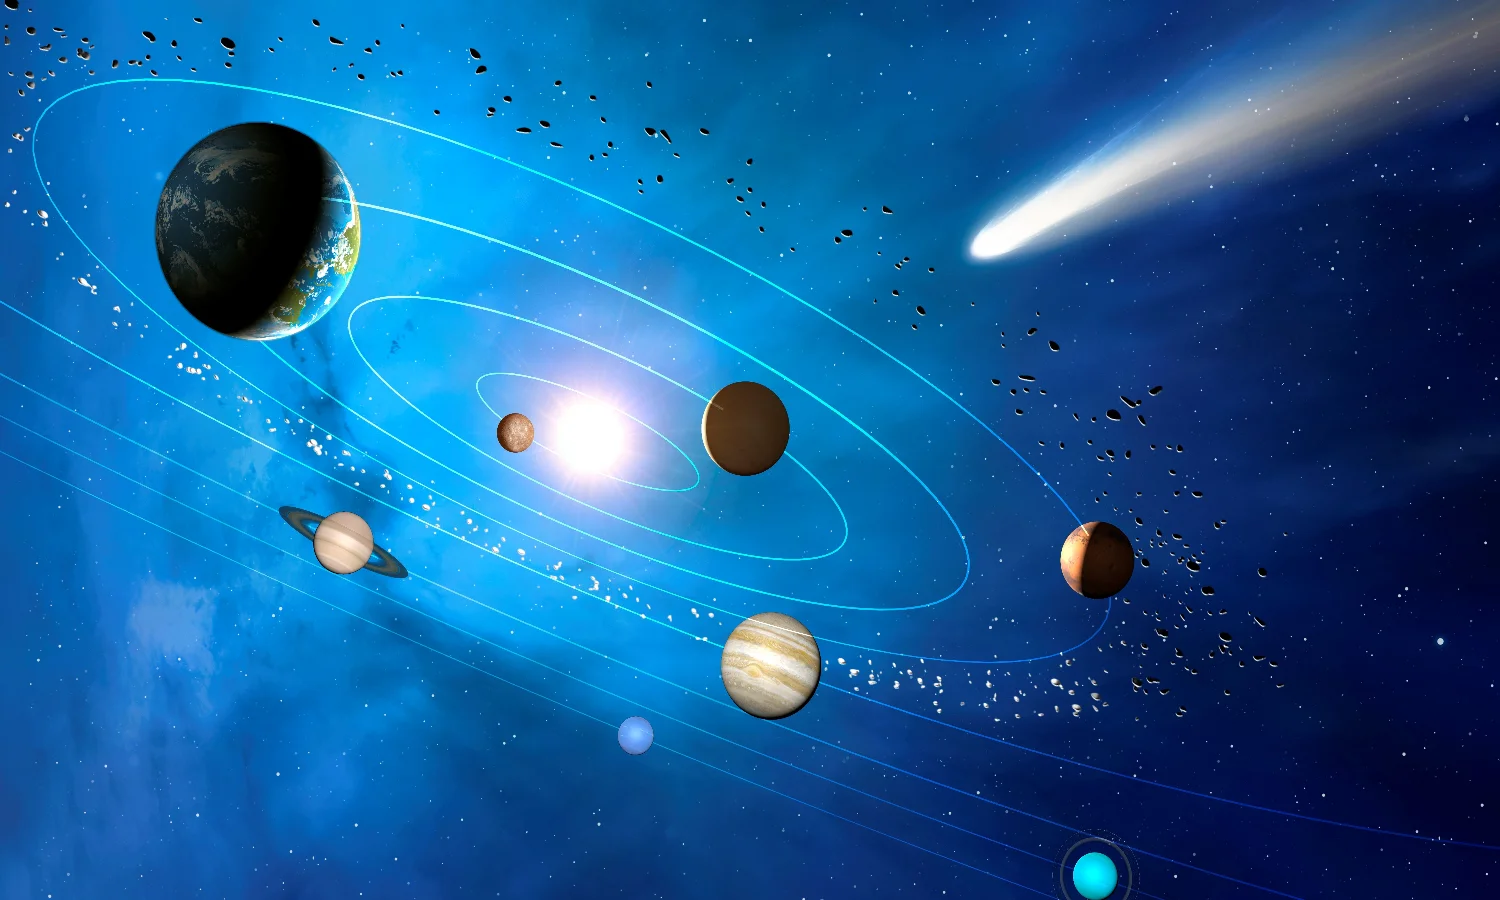 Ketahui Proses Terbentuknya Planet Di Sistem Tata Surya, Berikut Penjelasannya!